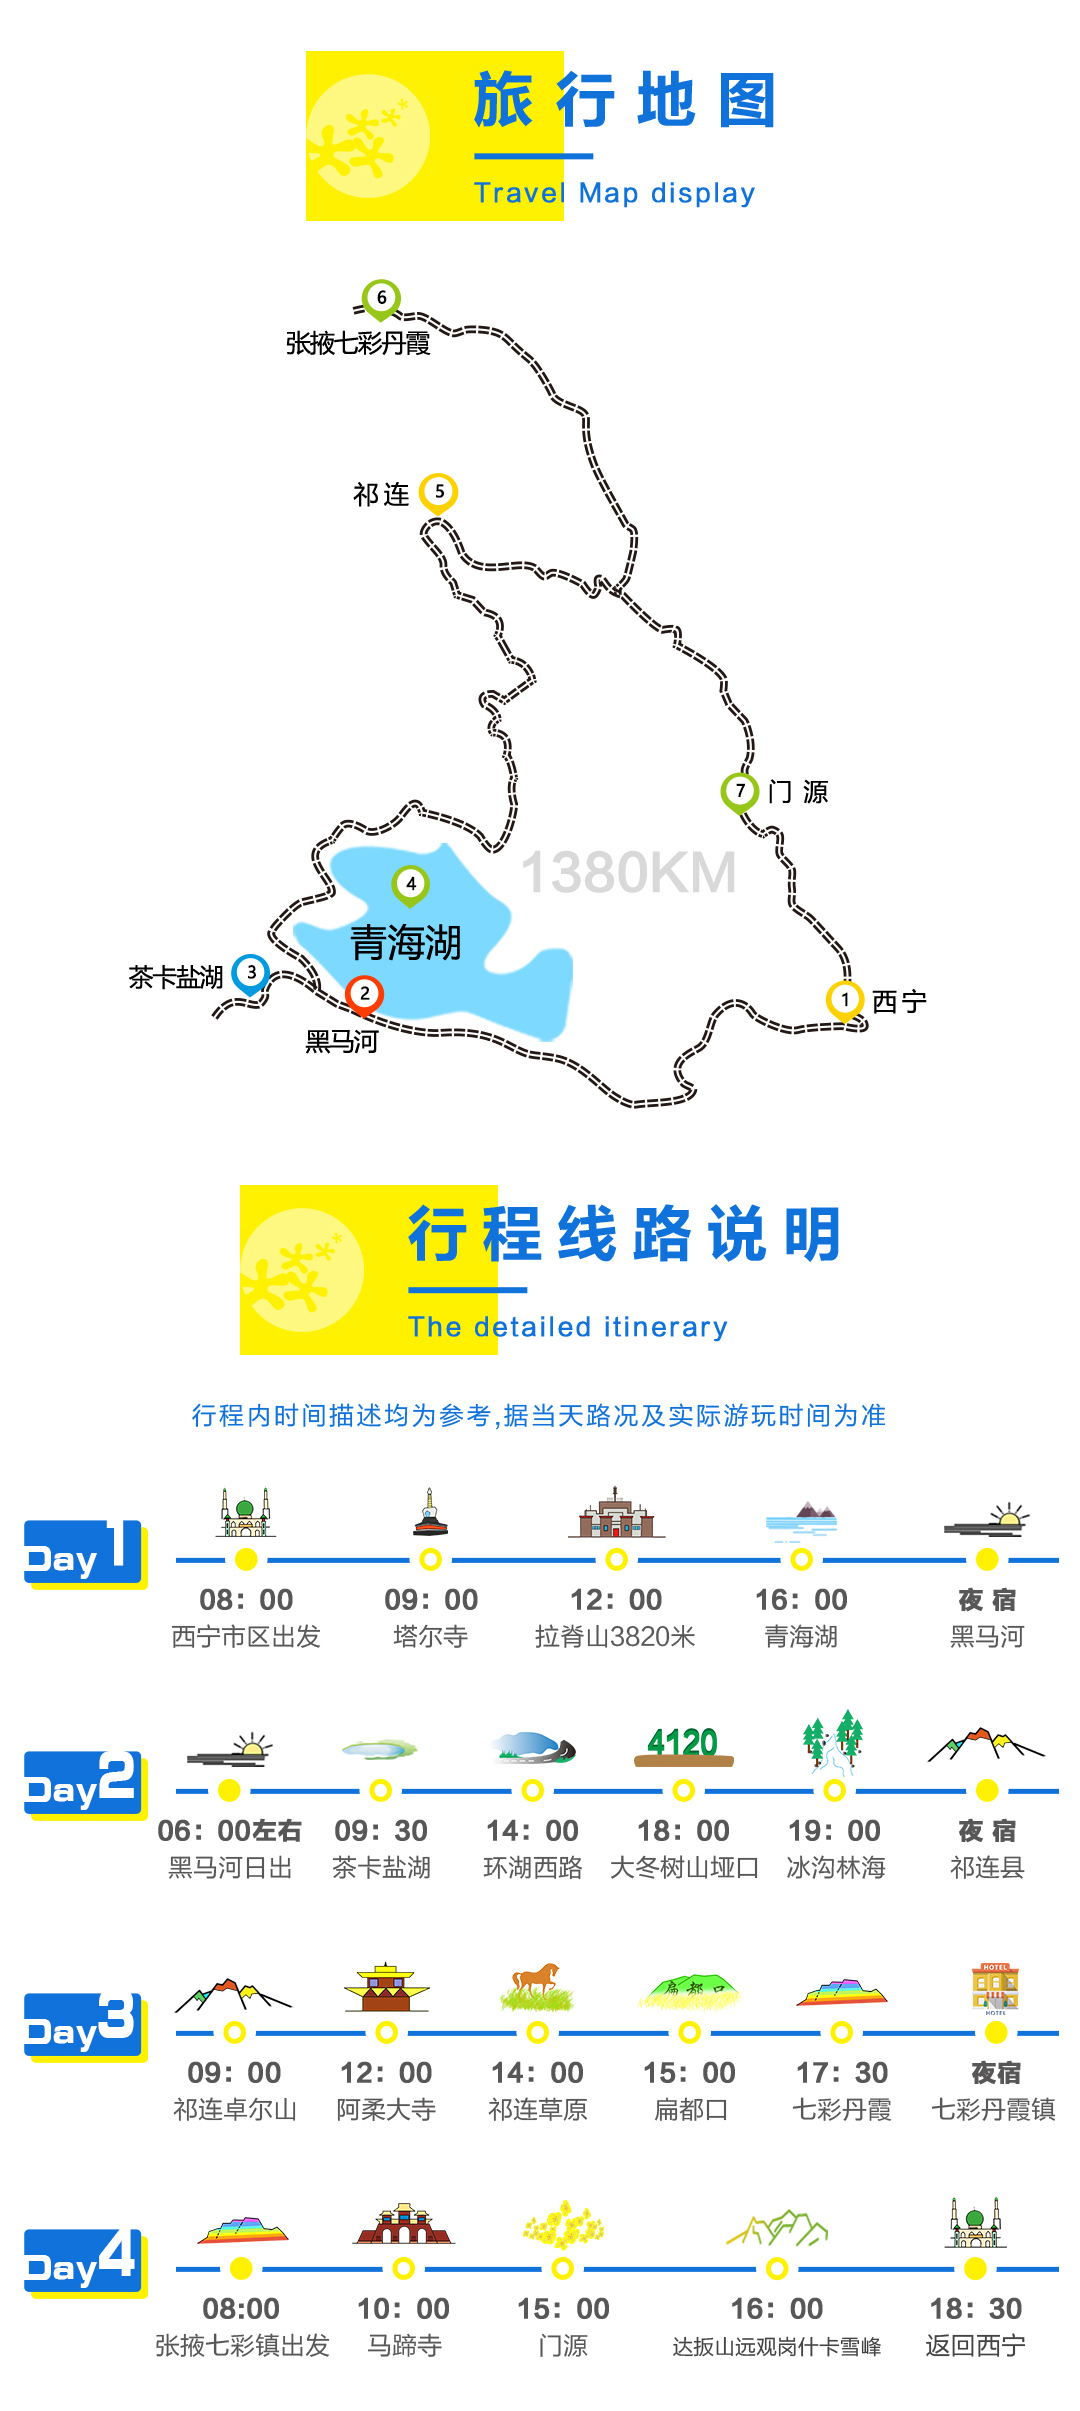 十一月份去青海湖四天三晚游,能提供点攻略吗?